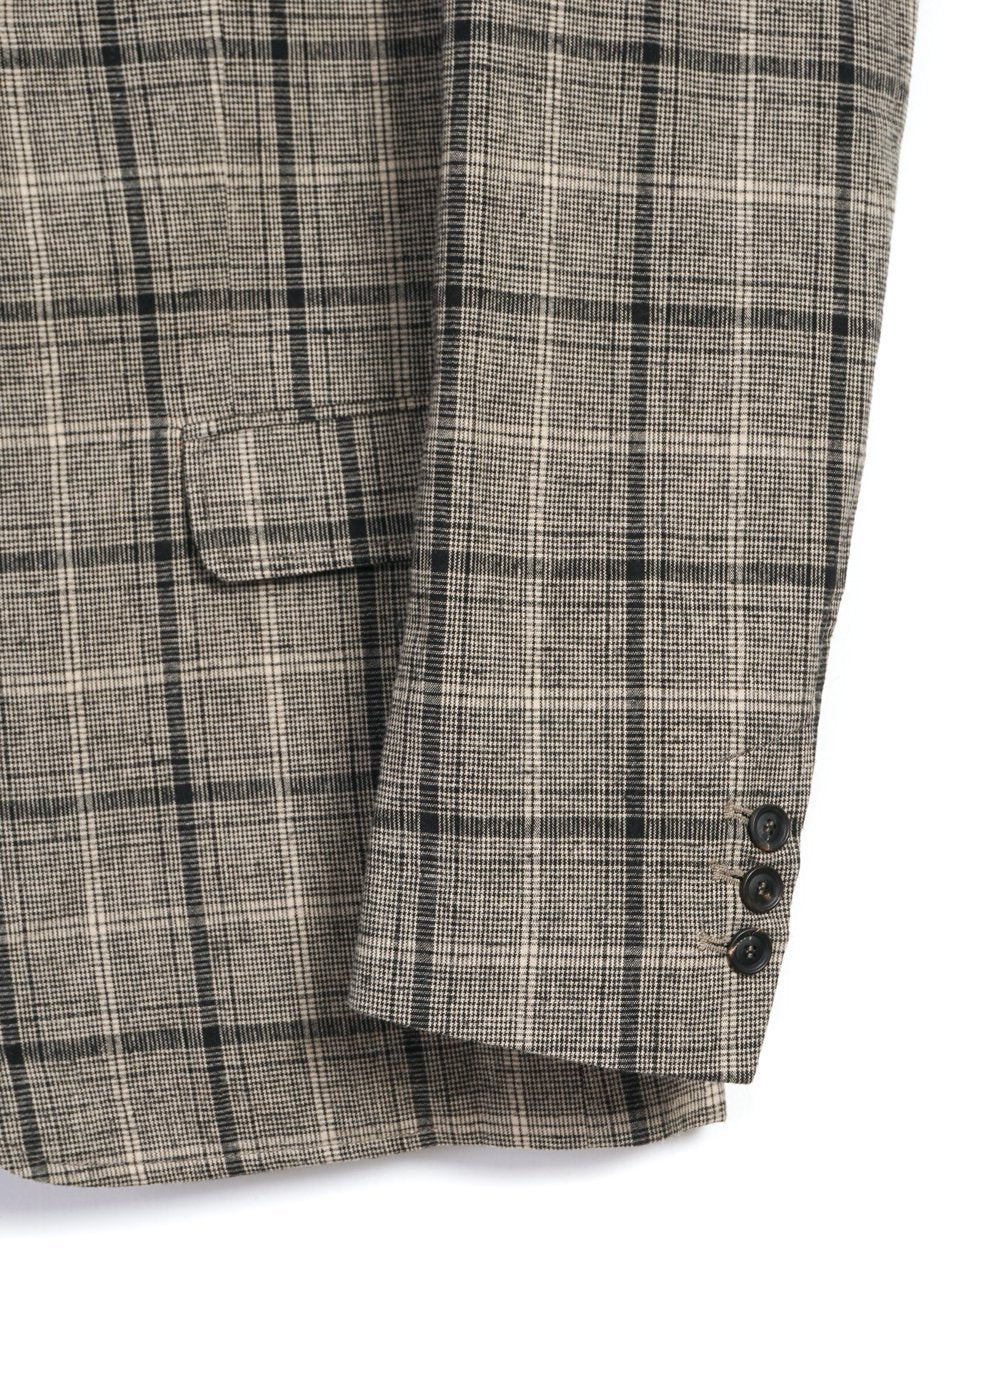 HANSEN GARMENTS - CHRISTOFFER | Two Button Blazer | Check 1 - HANSEN Garments